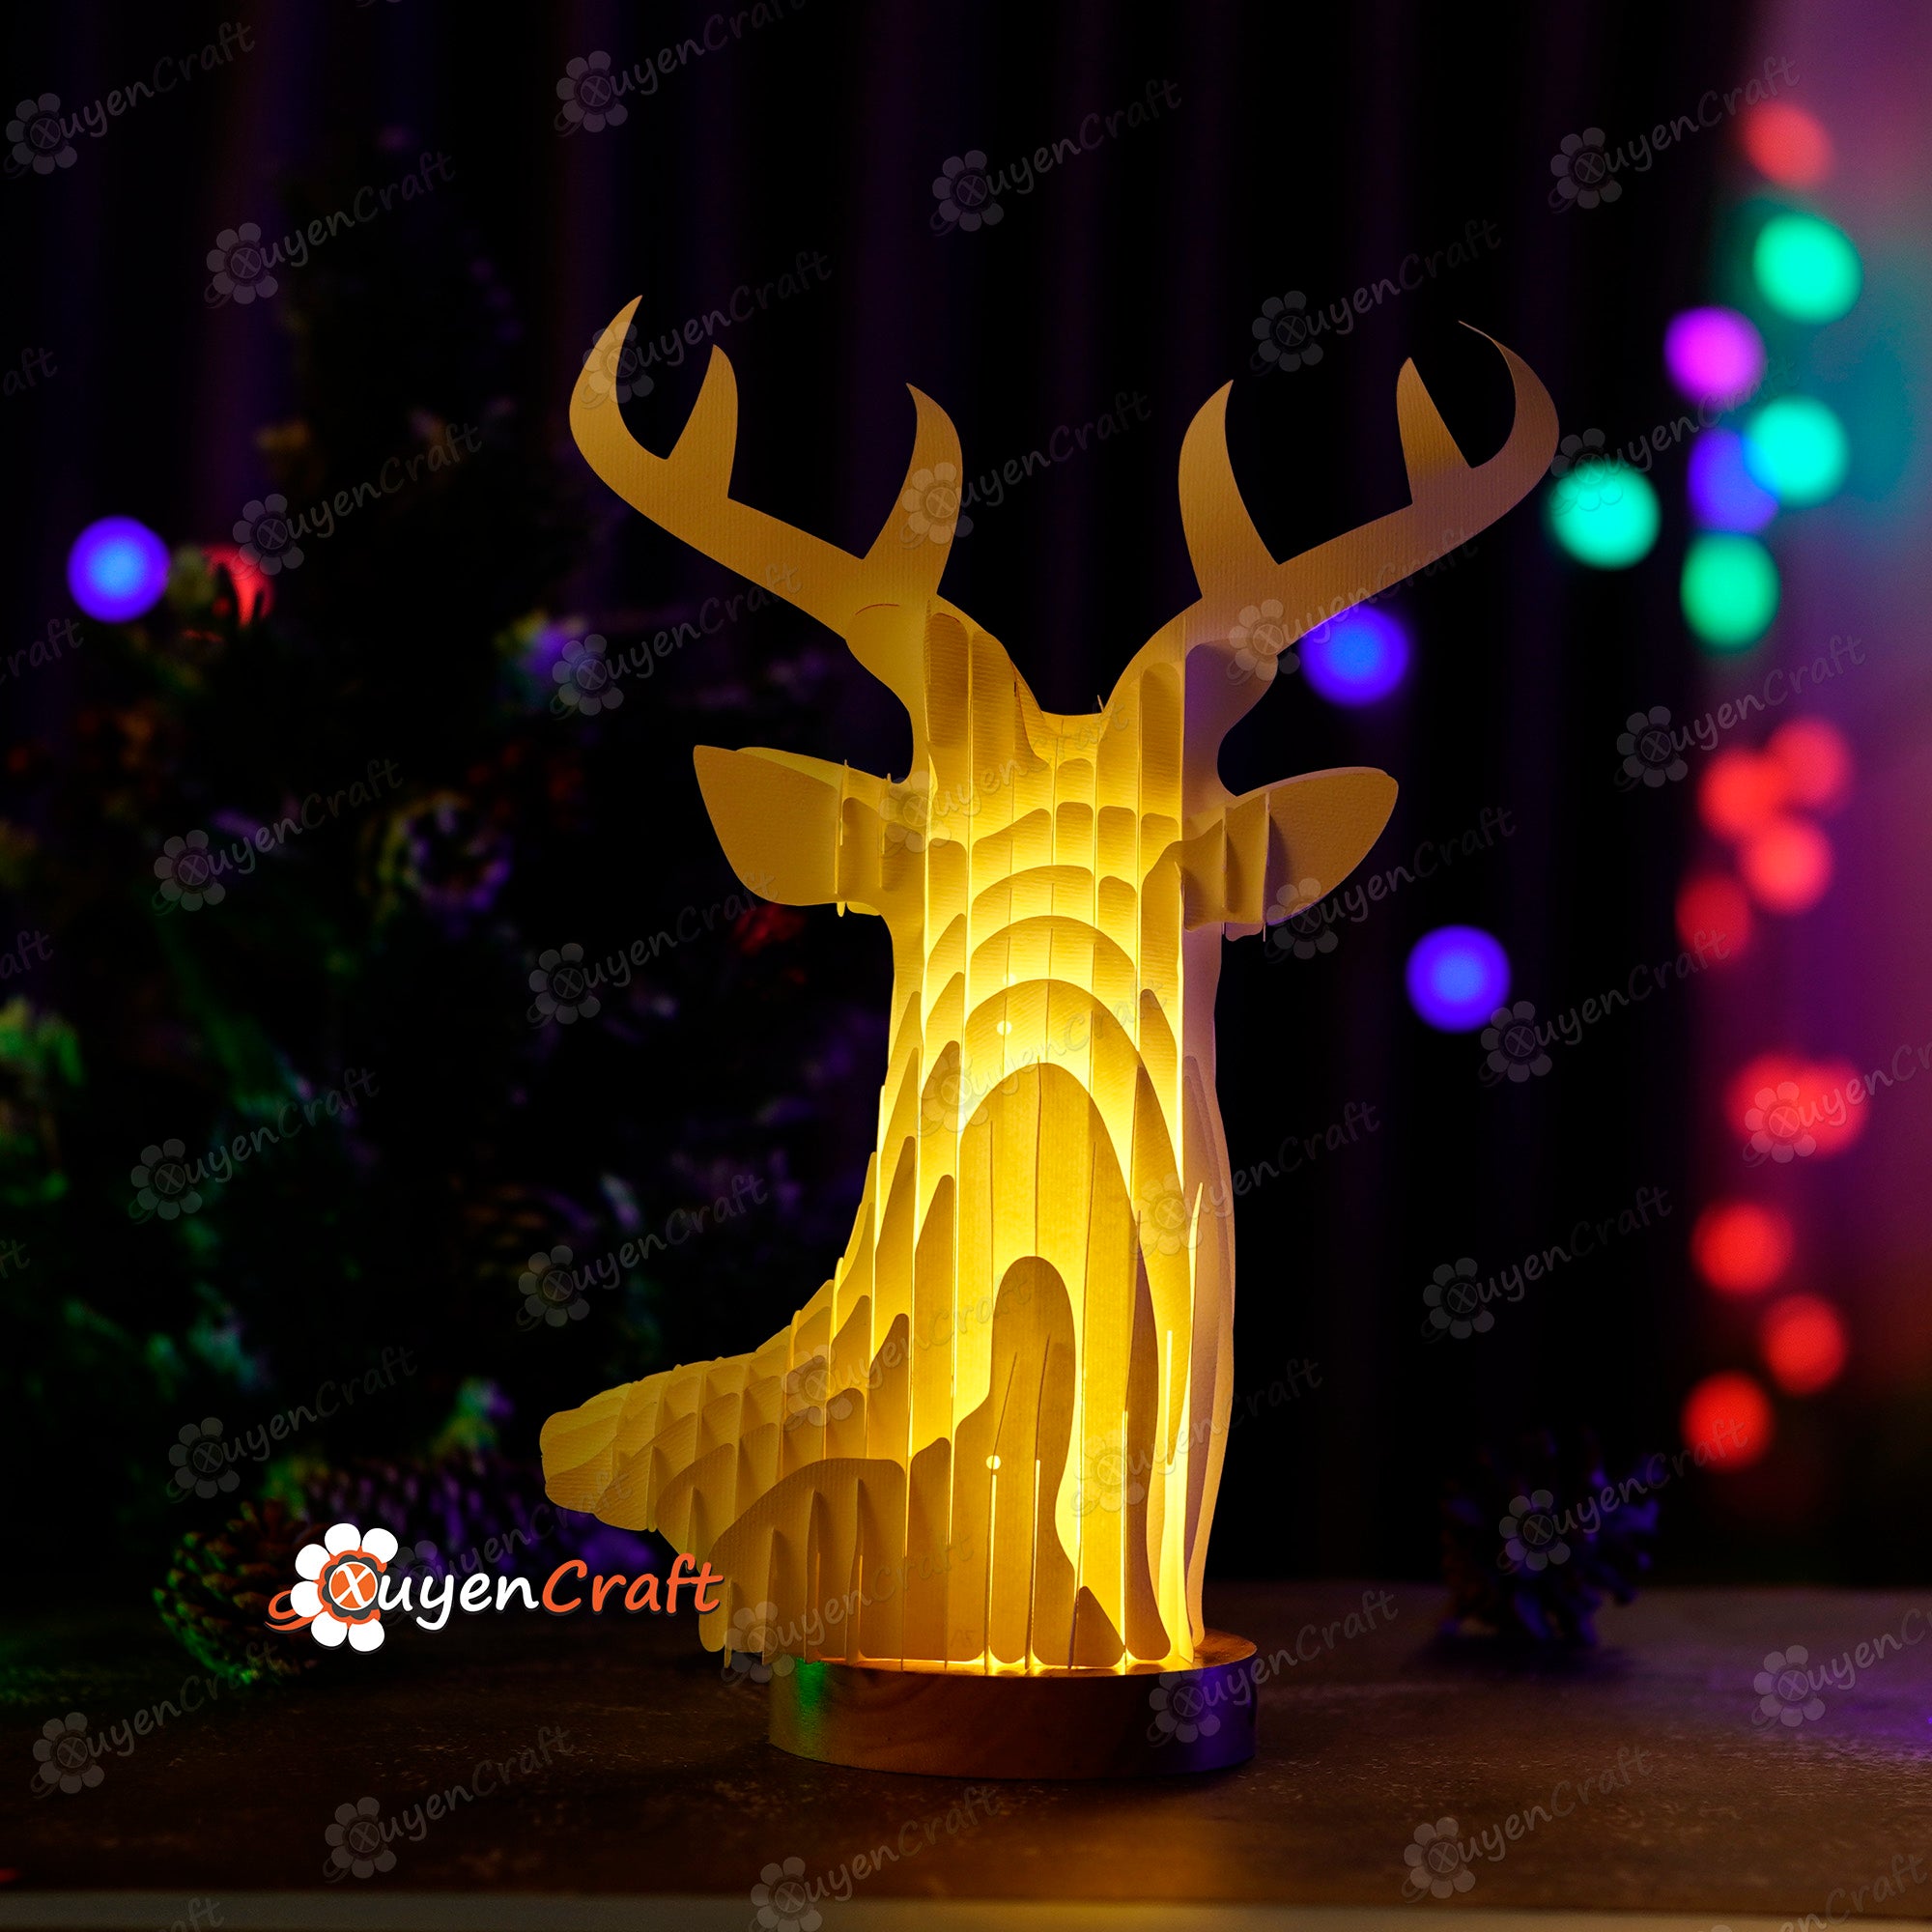 3D Reindeer Sliceform Pop Up SVG Template creating Deer Head Pop Up - Diy Christmas Decorations for Merry Christmas - Sliceform Papercraft